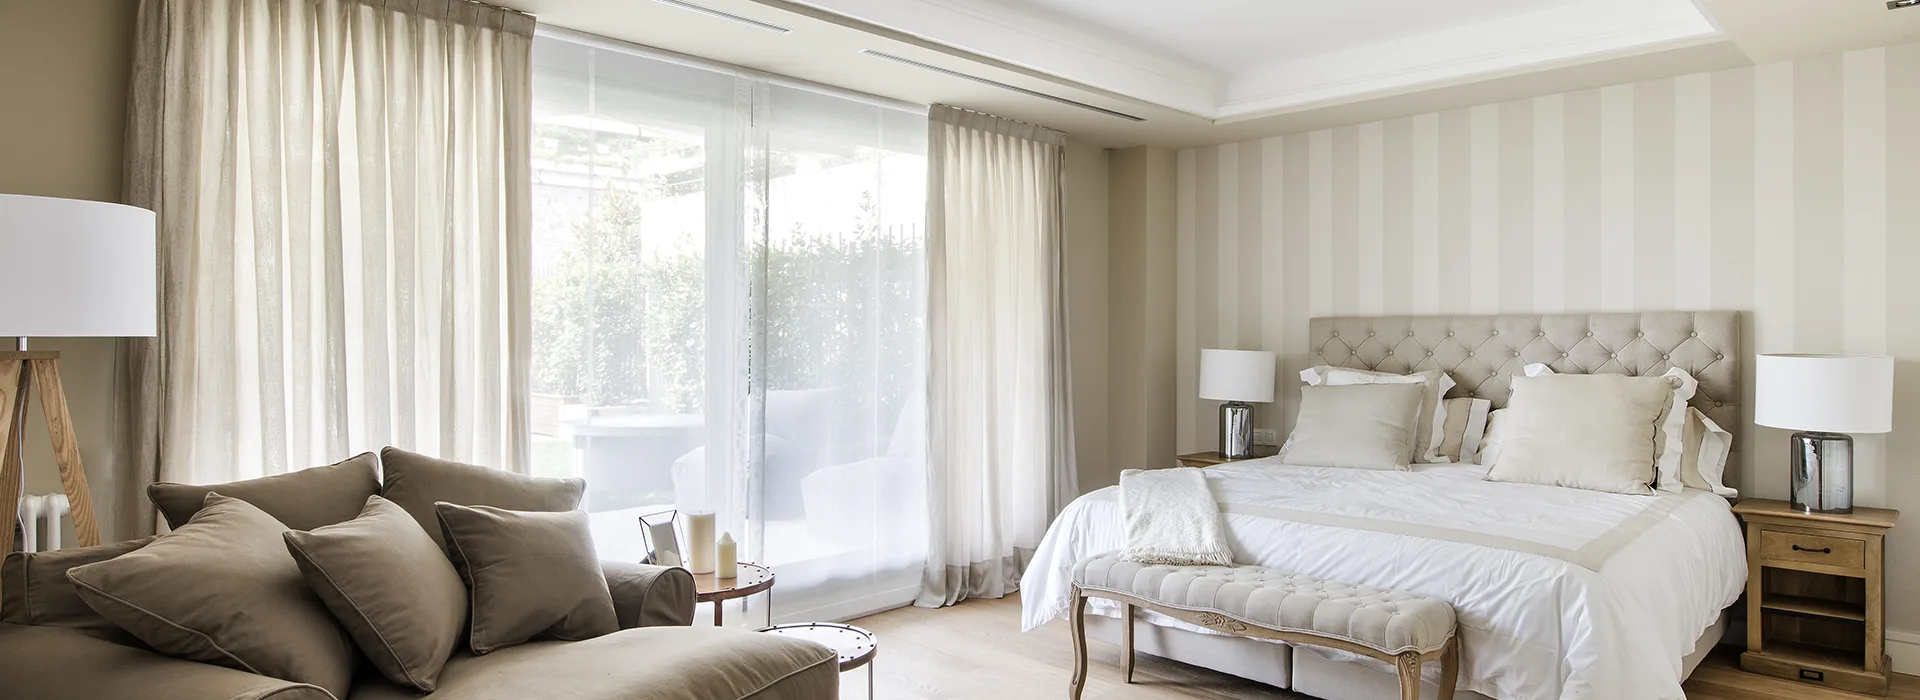 Las cortinas más recomendables para la decoración de habitaciones